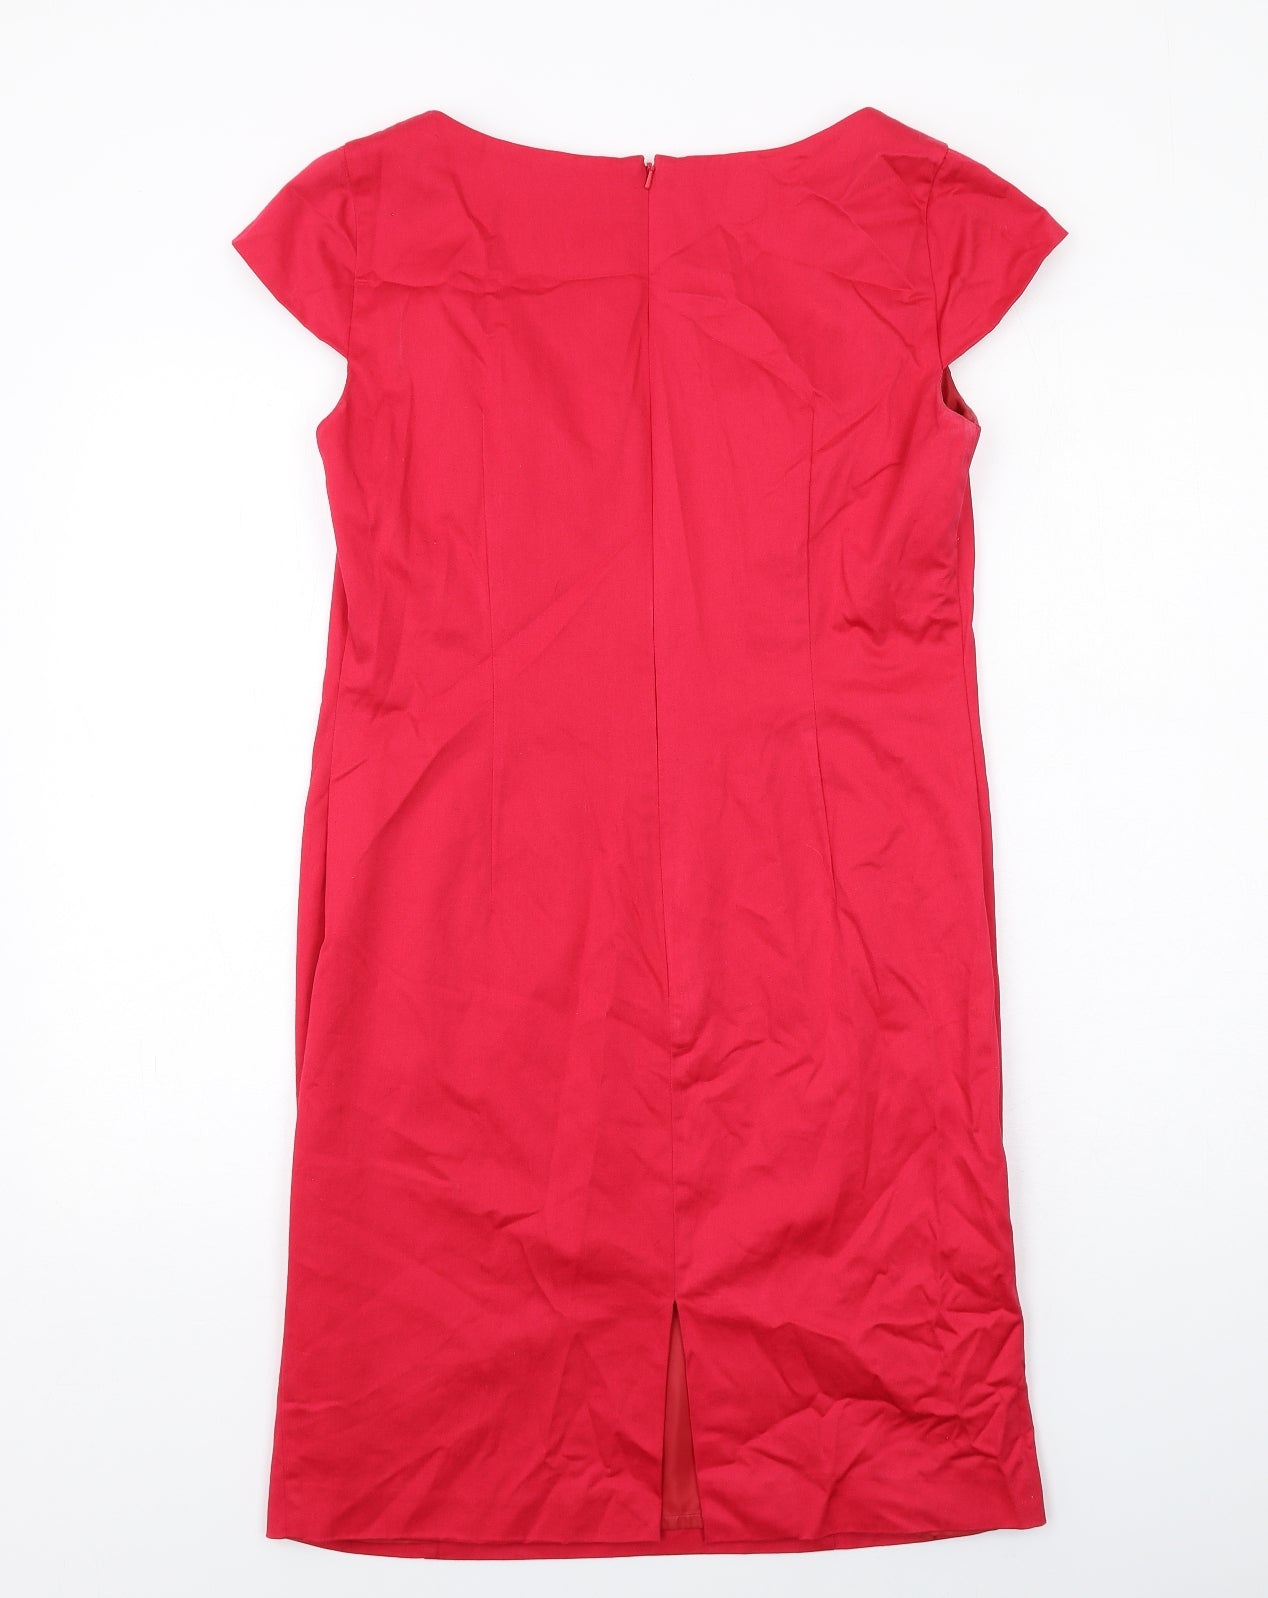 Bravissimo Womens Red Cotton Shift Size 14 V-Neck Zip